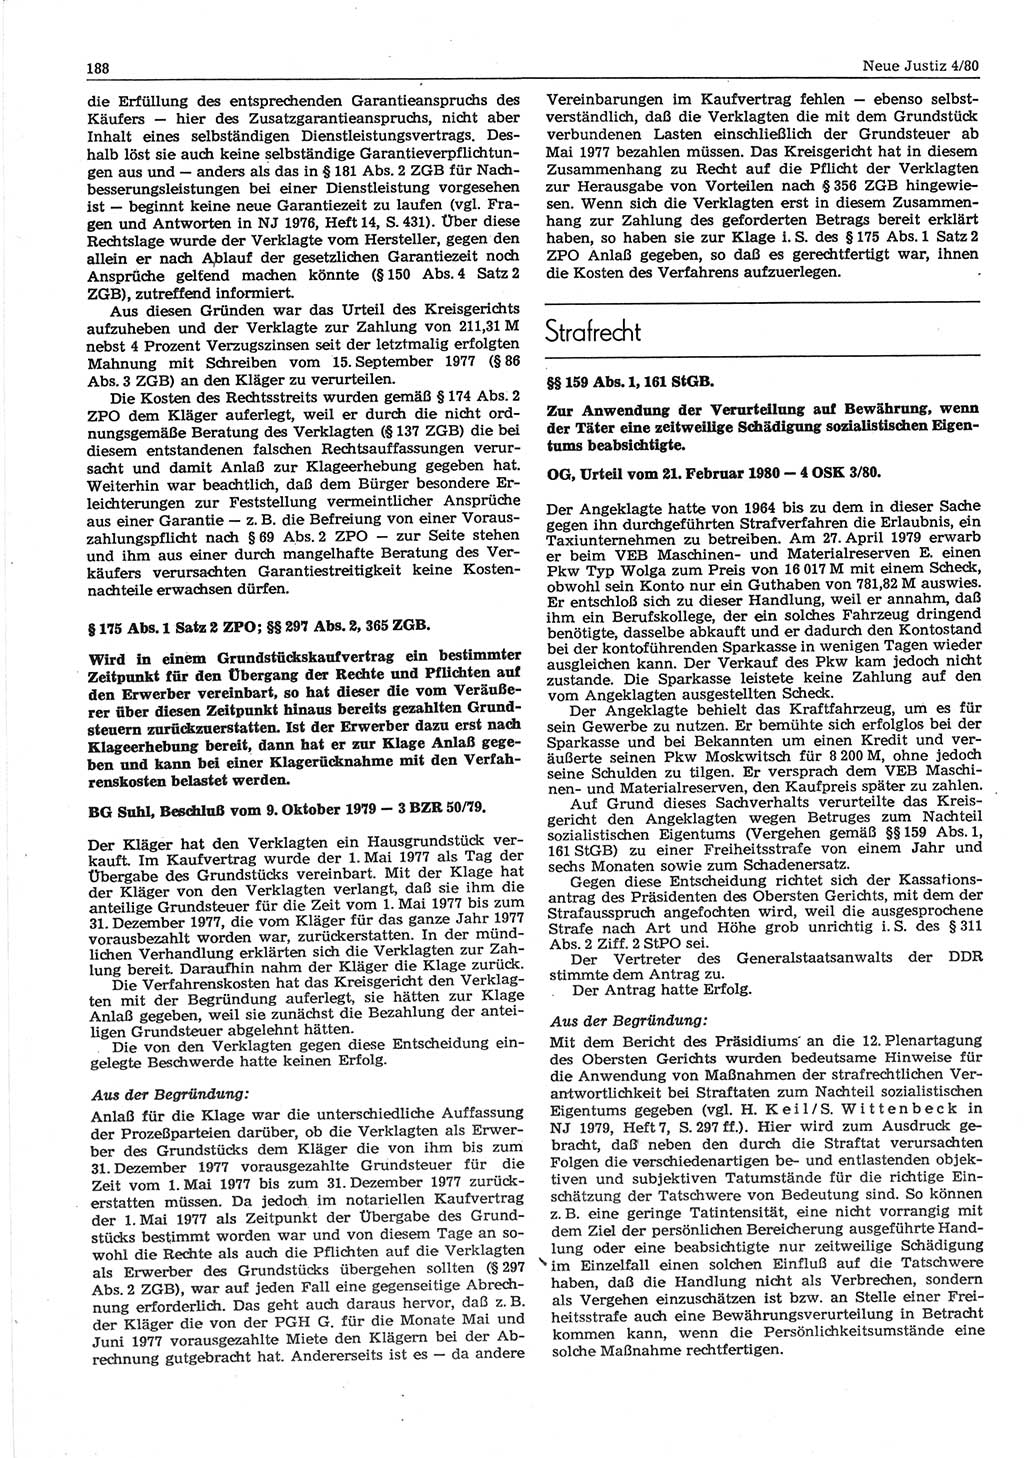 Neue Justiz (NJ), Zeitschrift für sozialistisches Recht und Gesetzlichkeit [Deutsche Demokratische Republik (DDR)], 34. Jahrgang 1980, Seite 188 (NJ DDR 1980, S. 188)